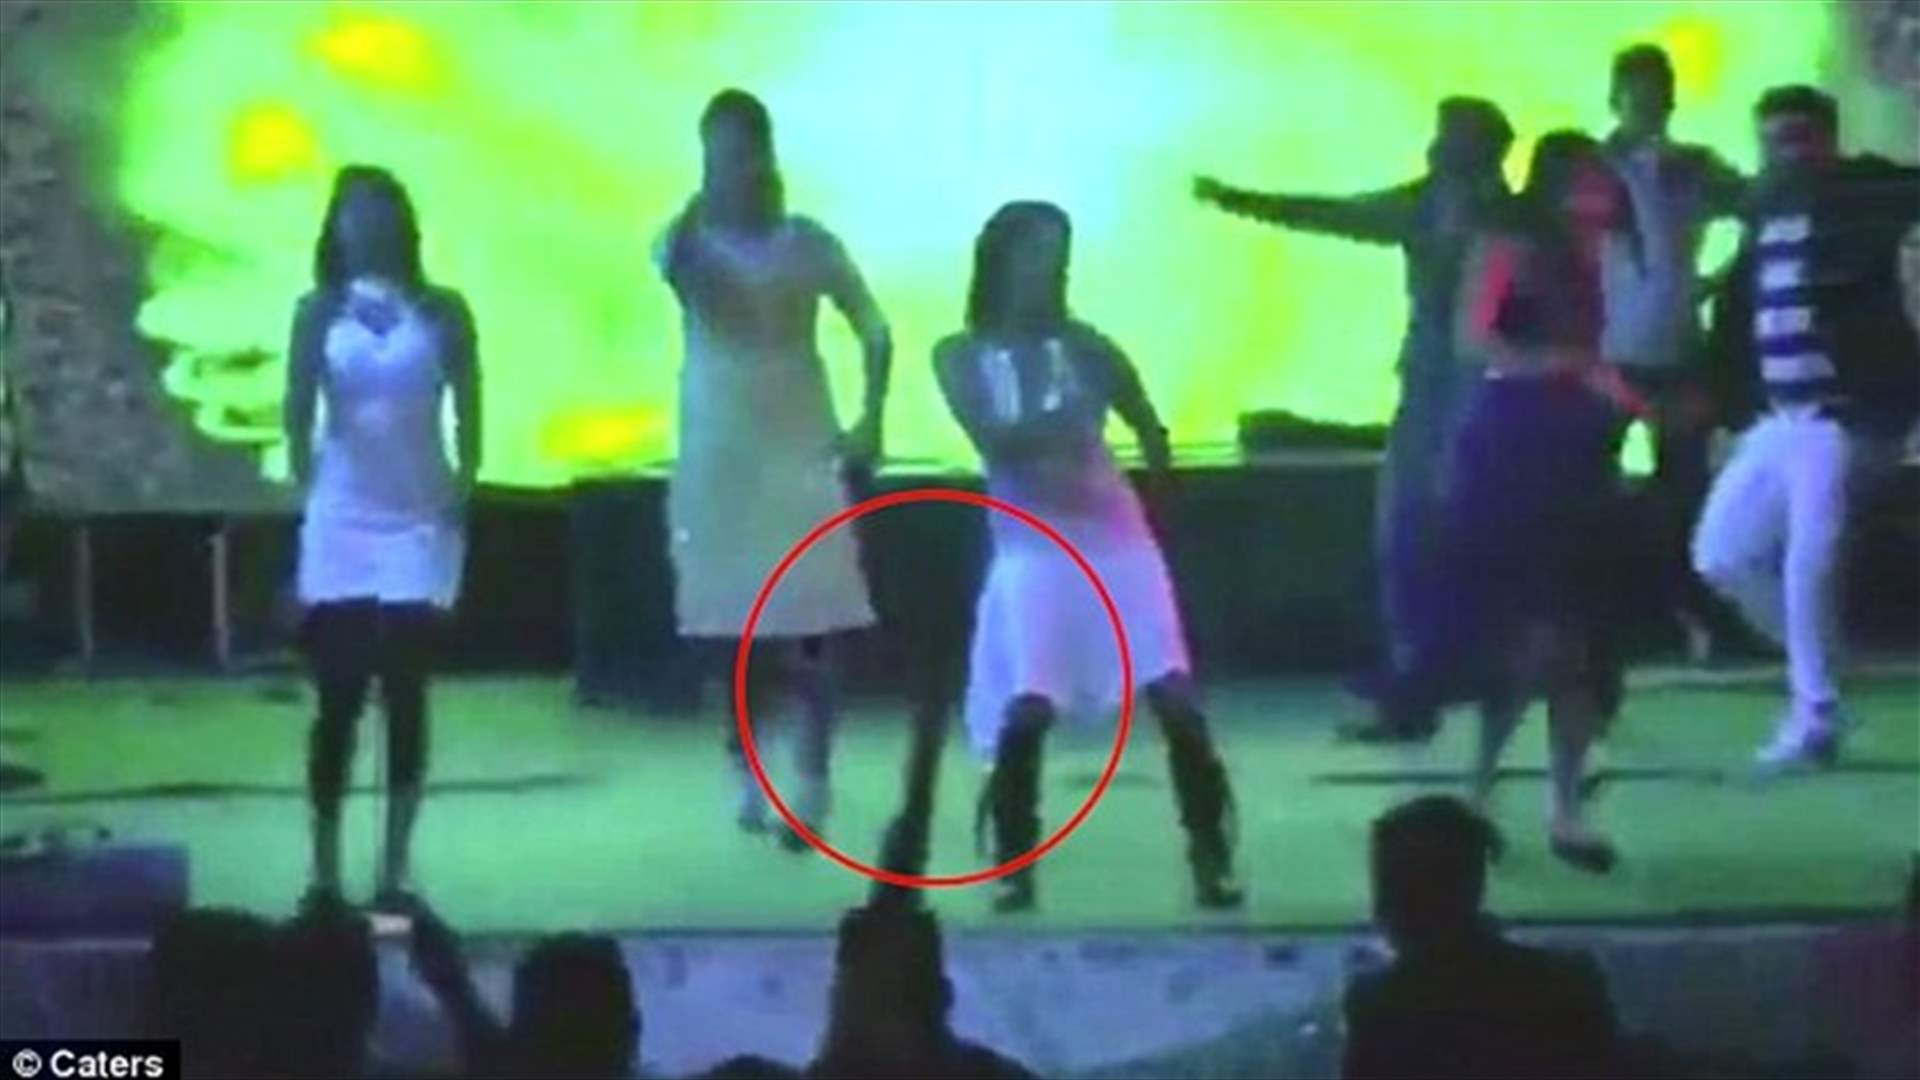 بالفيديو: مُنع من الرقص معها... فقتلها وهي حامل خلال حفل زفاف 